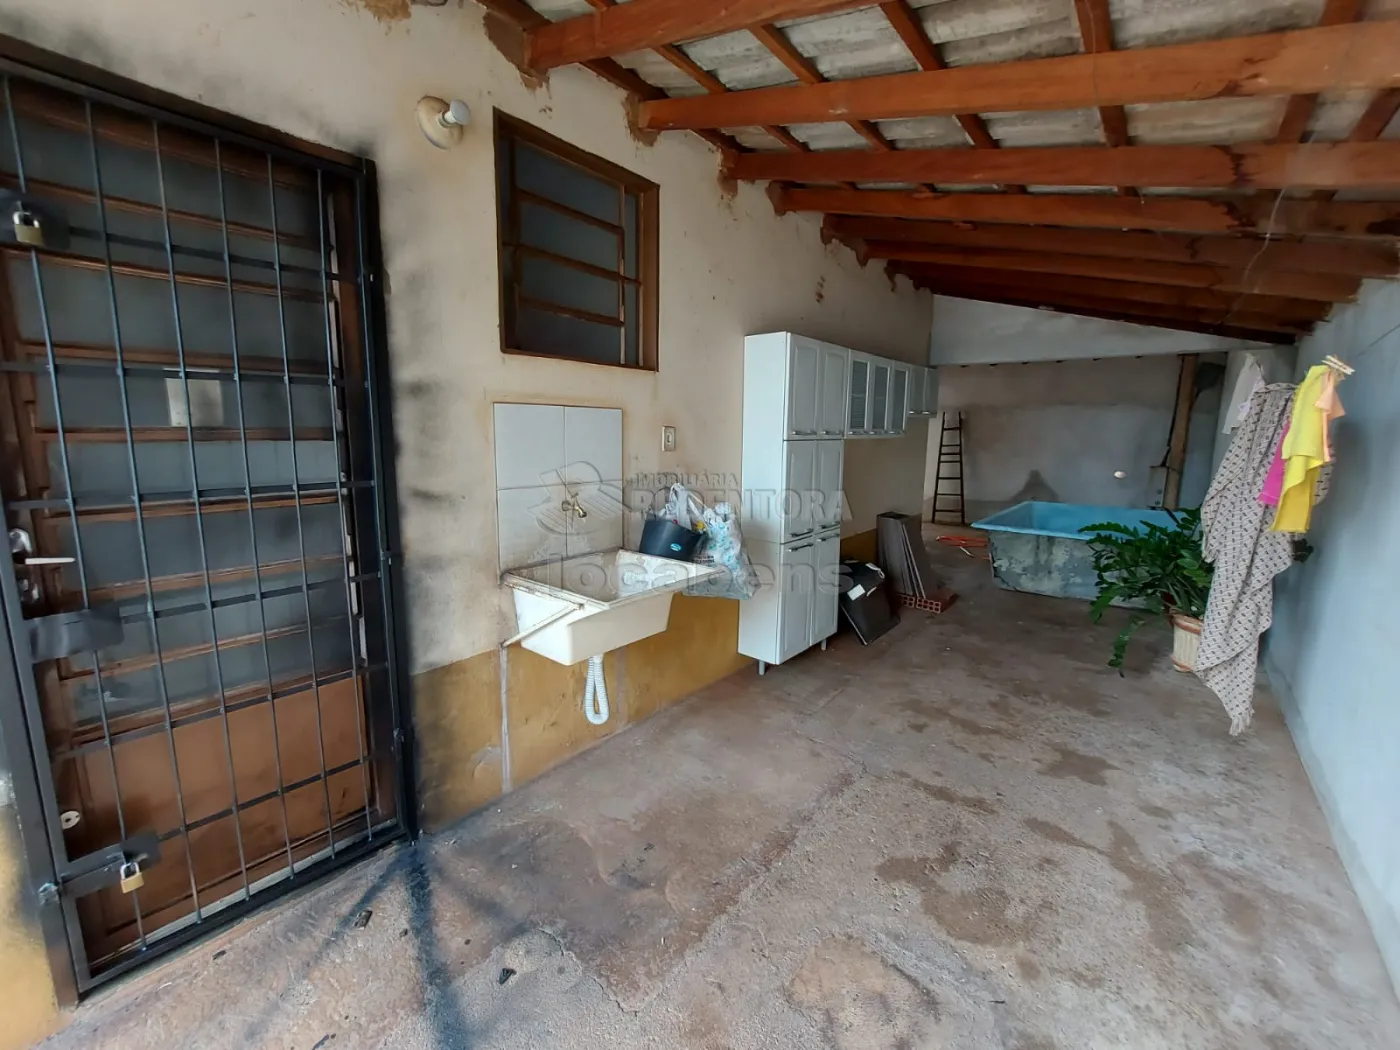 Alugar Casa / Padrão em São José do Rio Preto R$ 650,00 - Foto 7